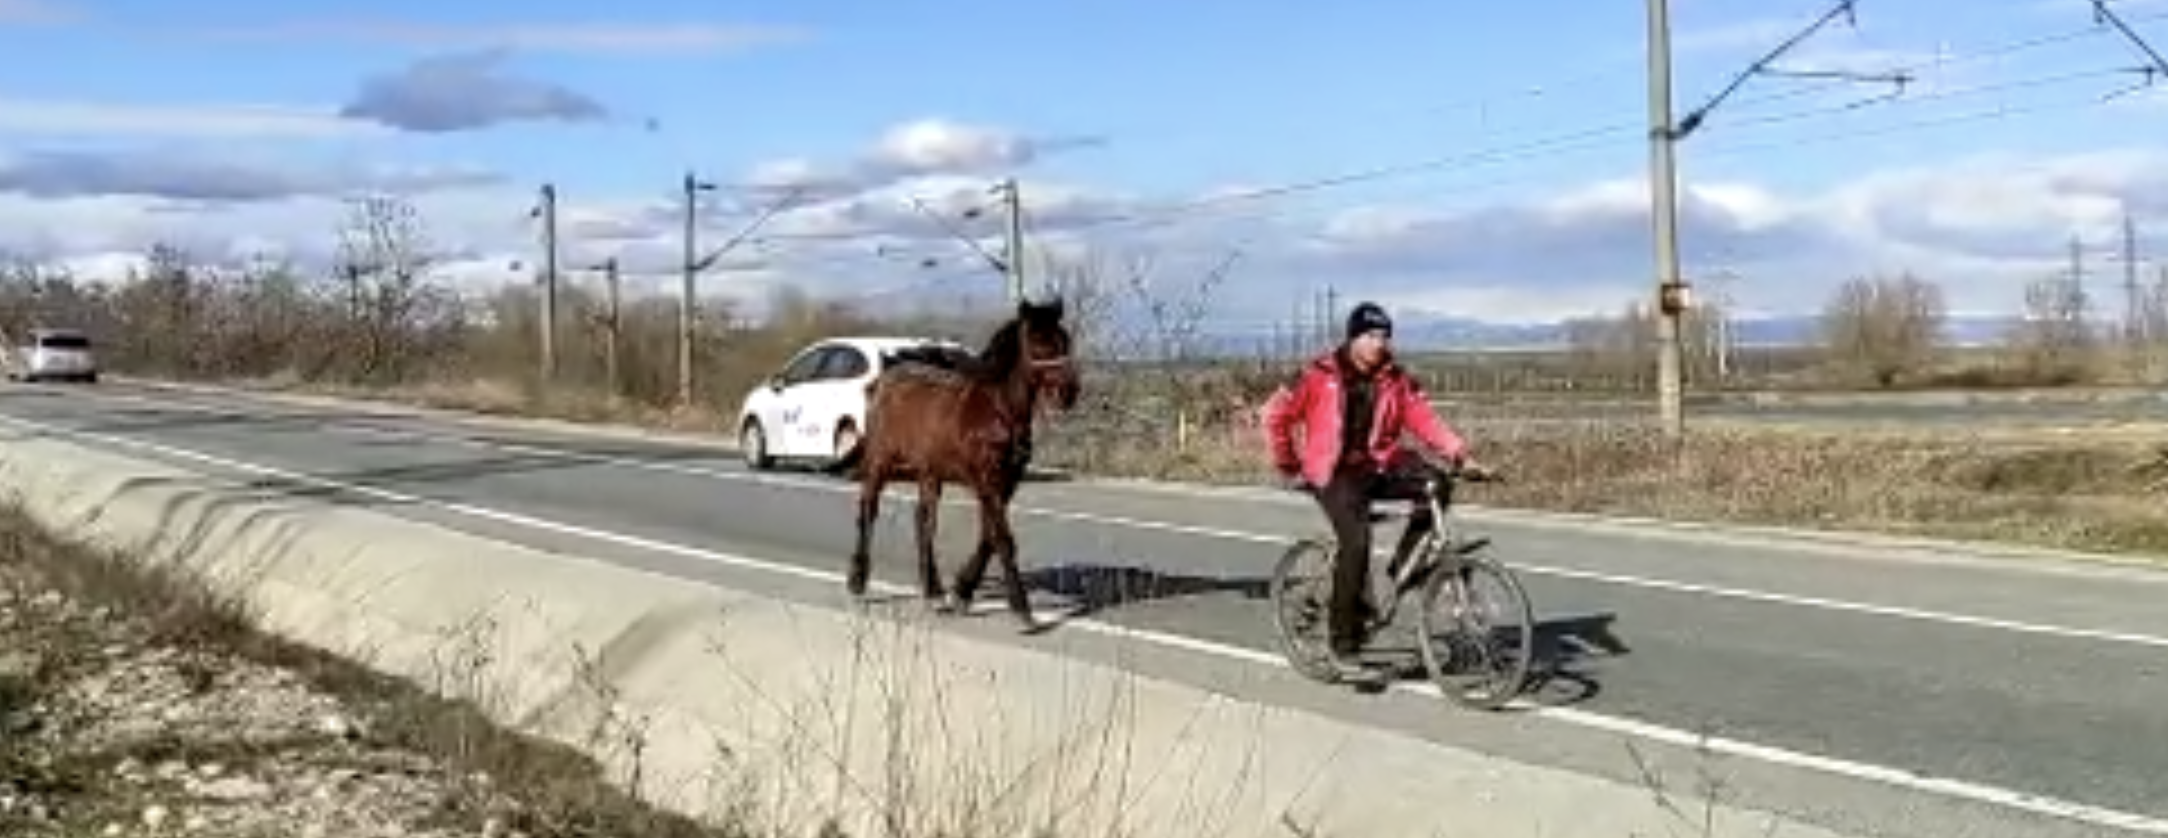 VIDEO. Calul de la bicicletă. Doar o imagine a sărăciei în pandemie, dar numai asta?